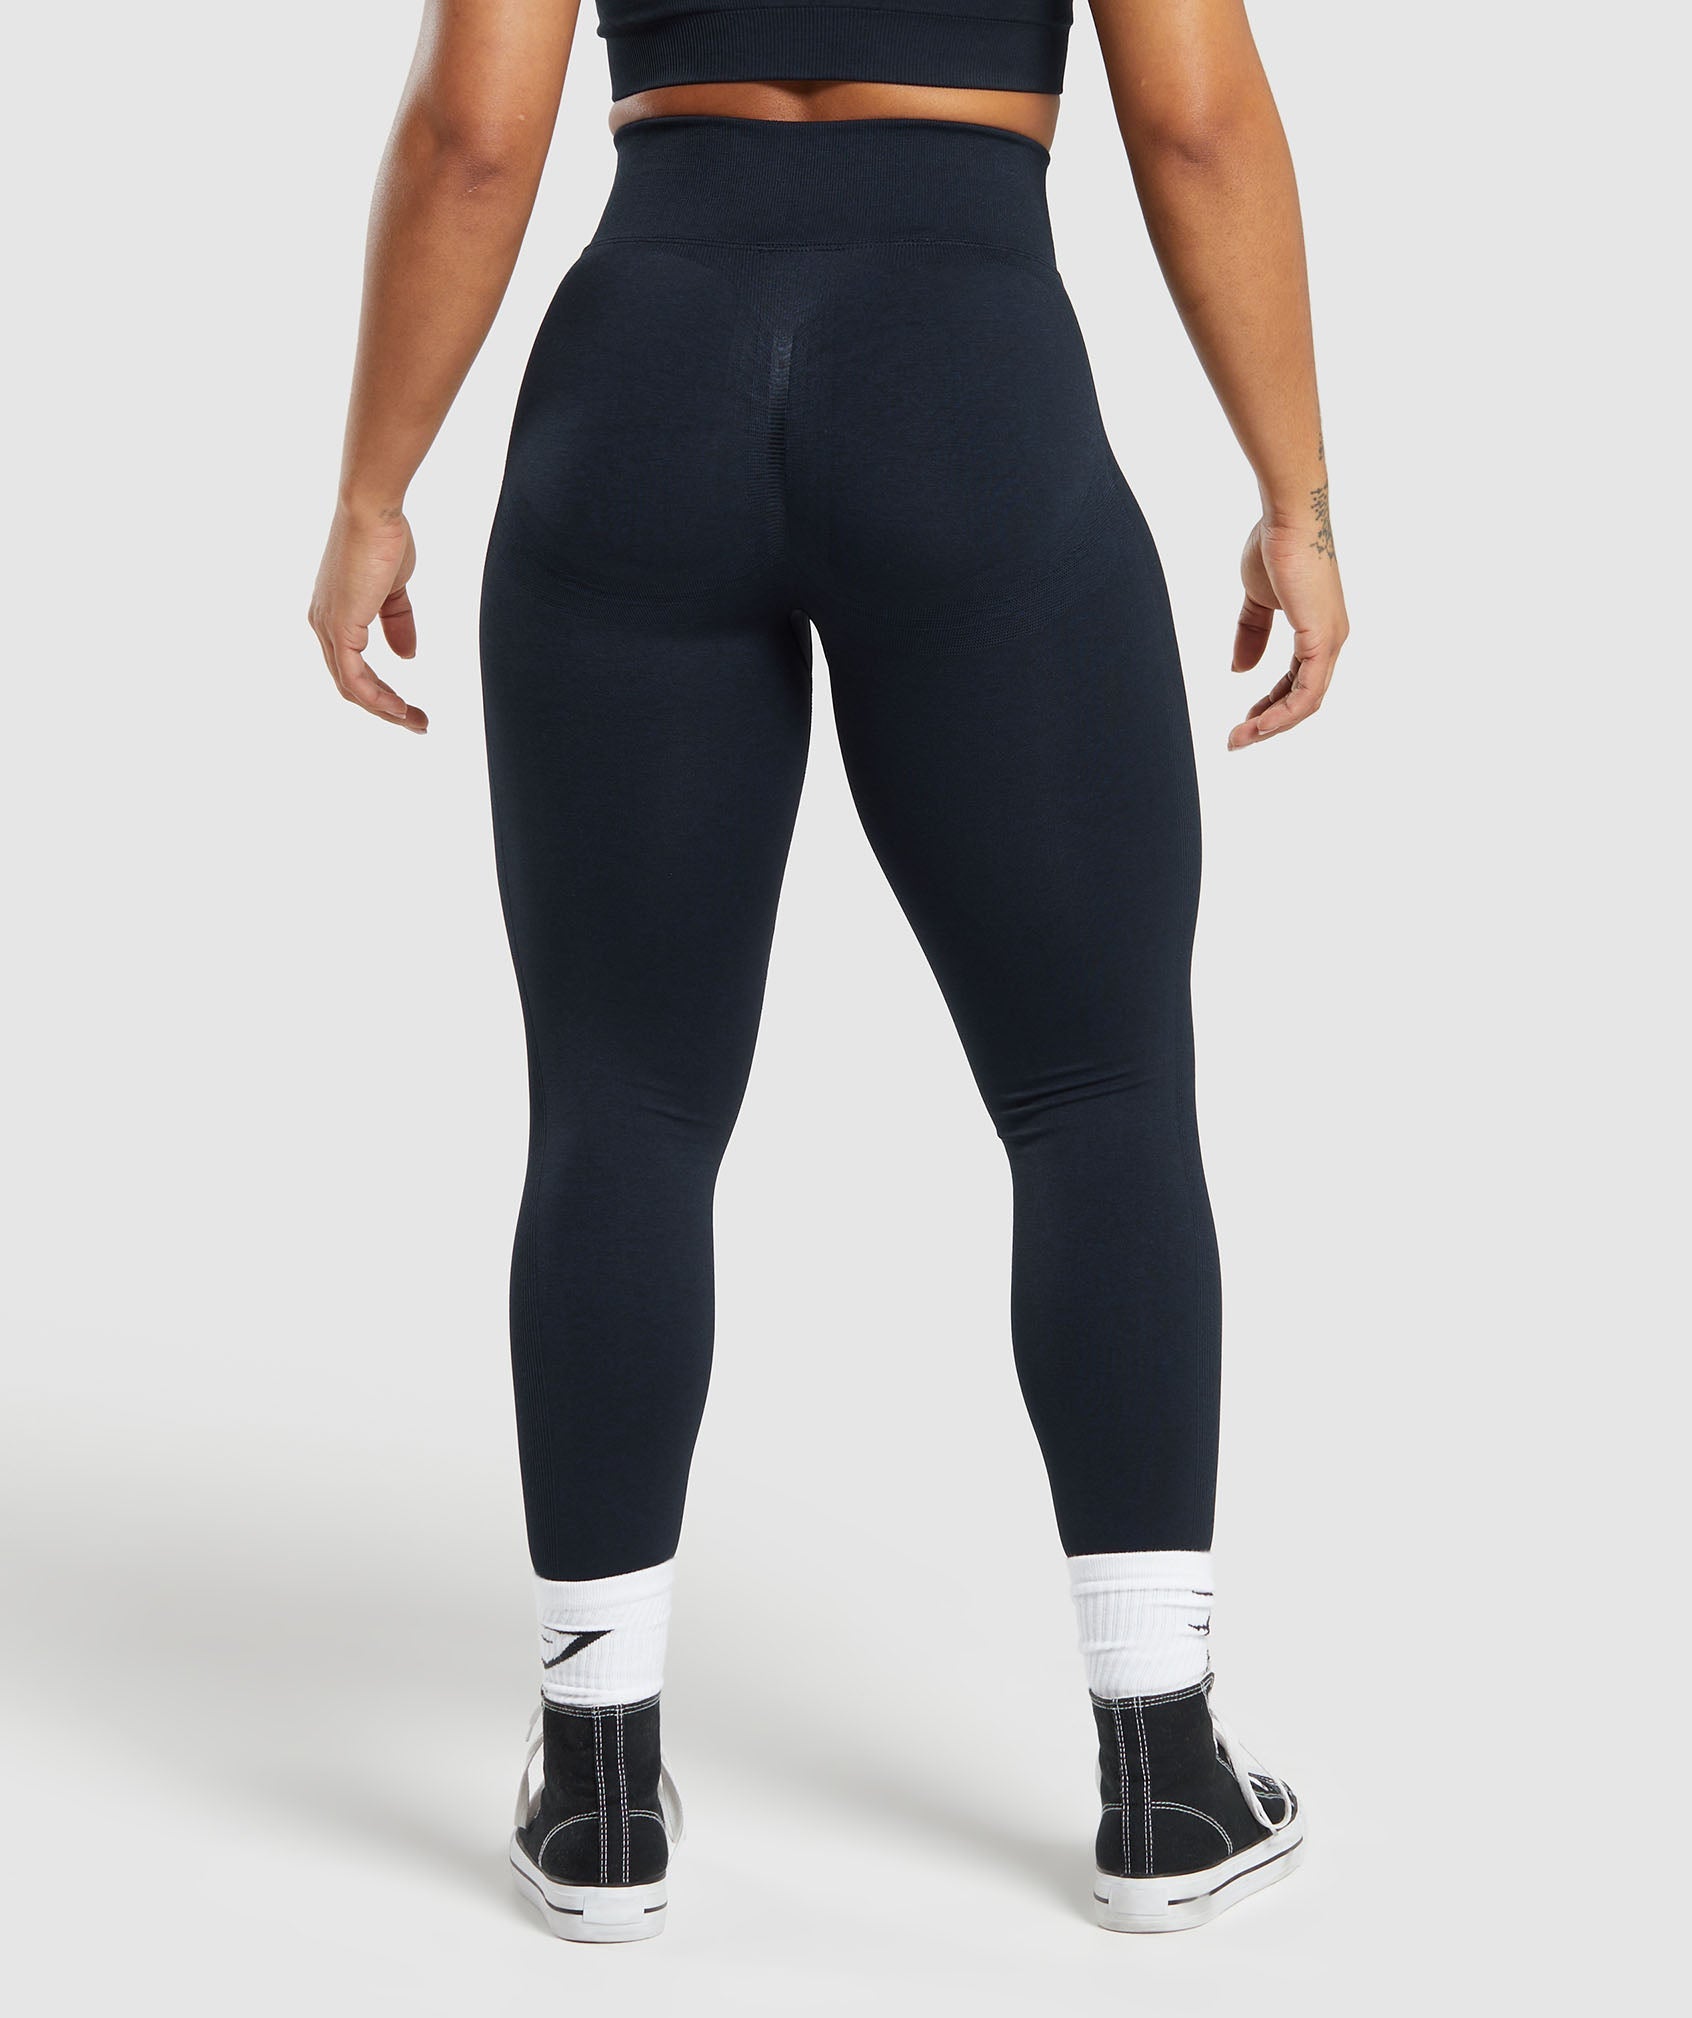 legs that never end ✨ wearing the gymshark lift contour leggings & spo, Leggins